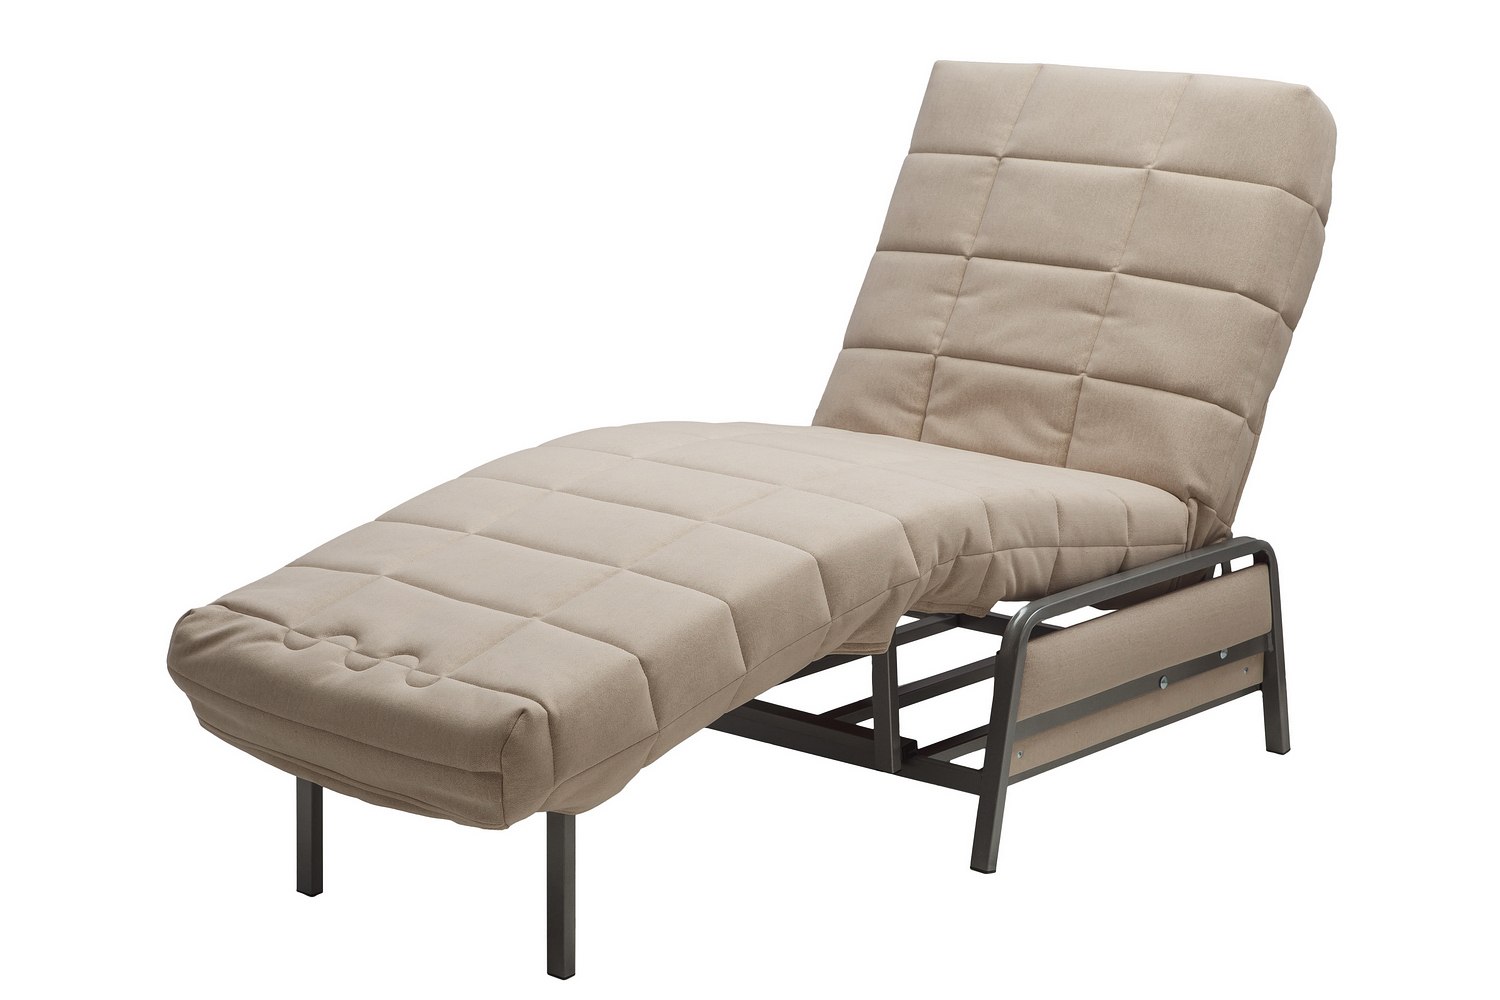 Кресло дискавери. Кресло-кровать акробат Дискавери 130. Кресло-кровать акробат Инфинити 01. Кресло-кровать акробат Люкс Дискавери 232.